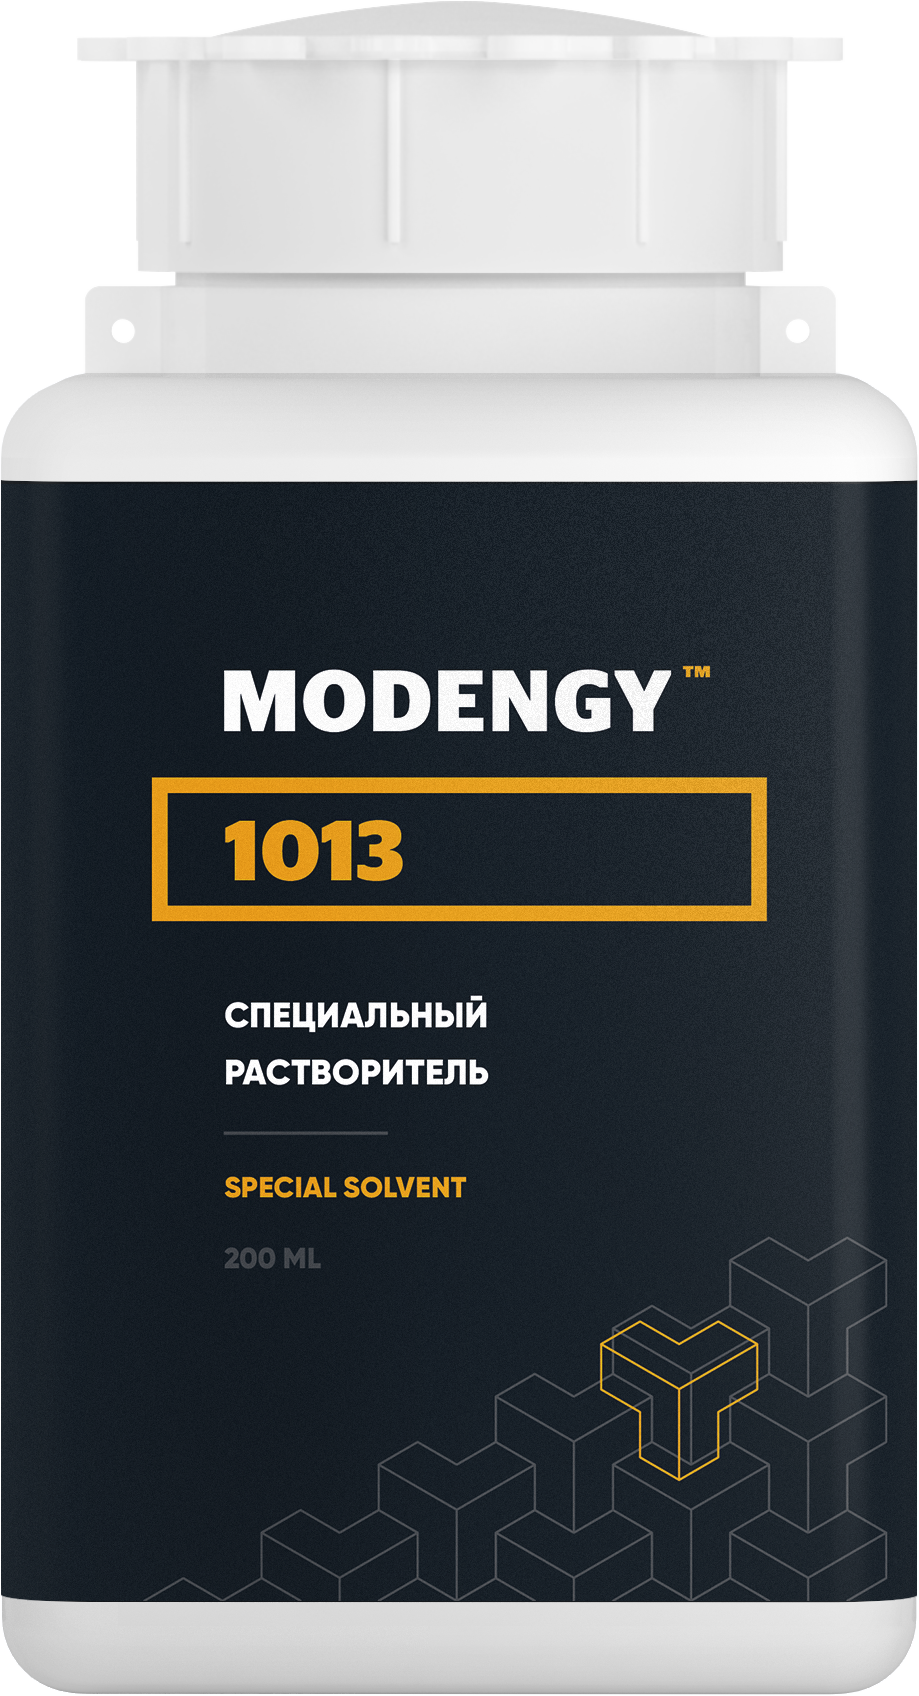 Специальный растворитель MODENGY 1013 (200 мл) специальный очиститель активатор modengy 4 5 л